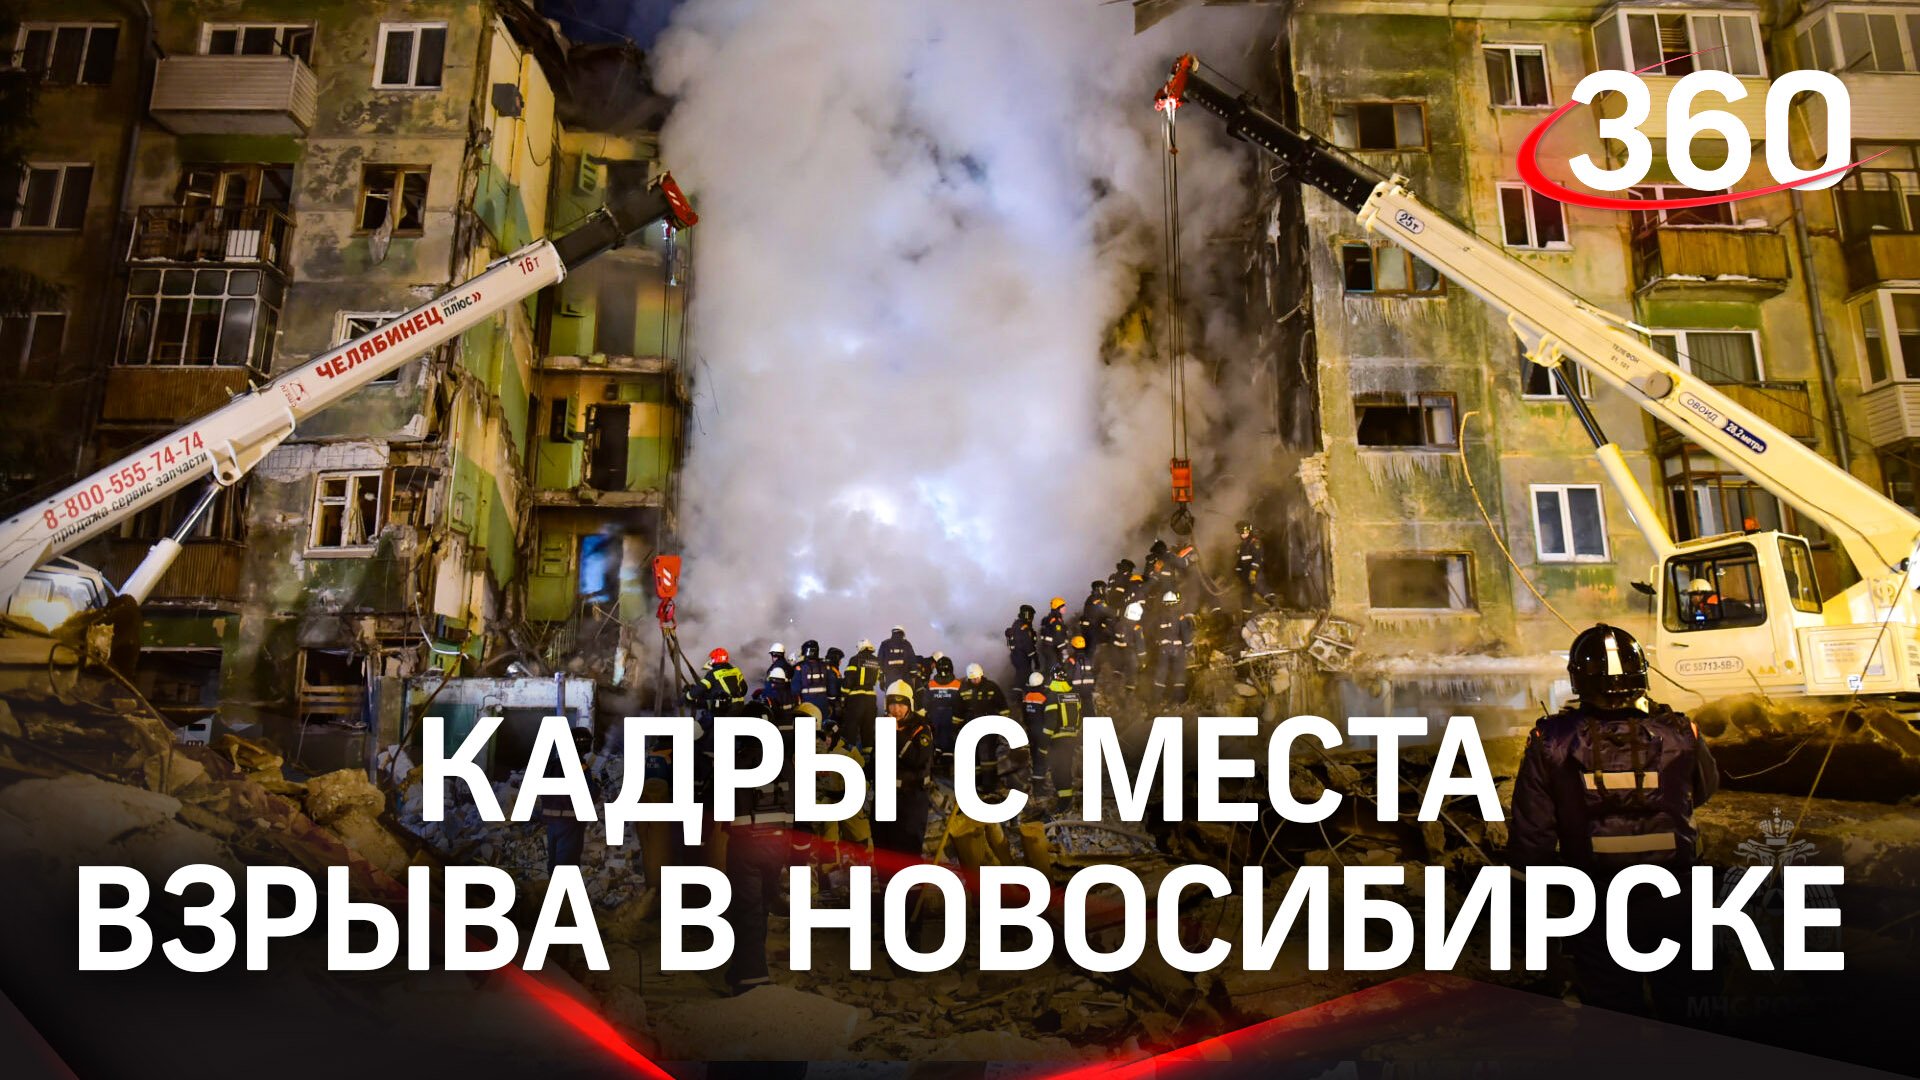 Ещё один погибший - количество жертв взрыва газа в Новосибирске возросло